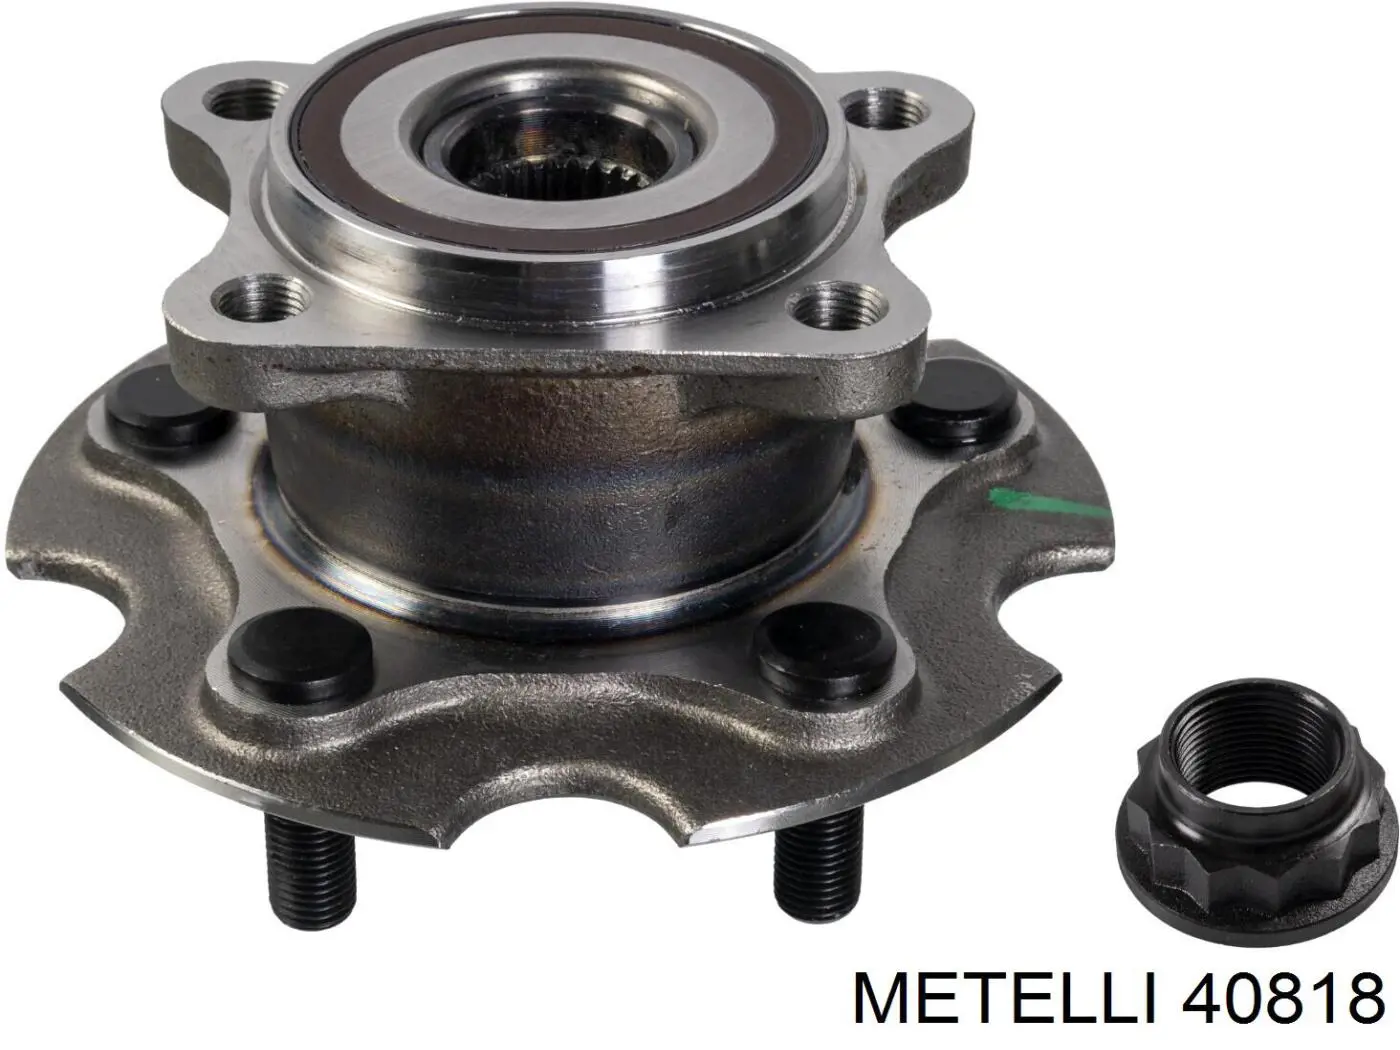 40818 Metelli цилиндр тормозной колесный рабочий задний